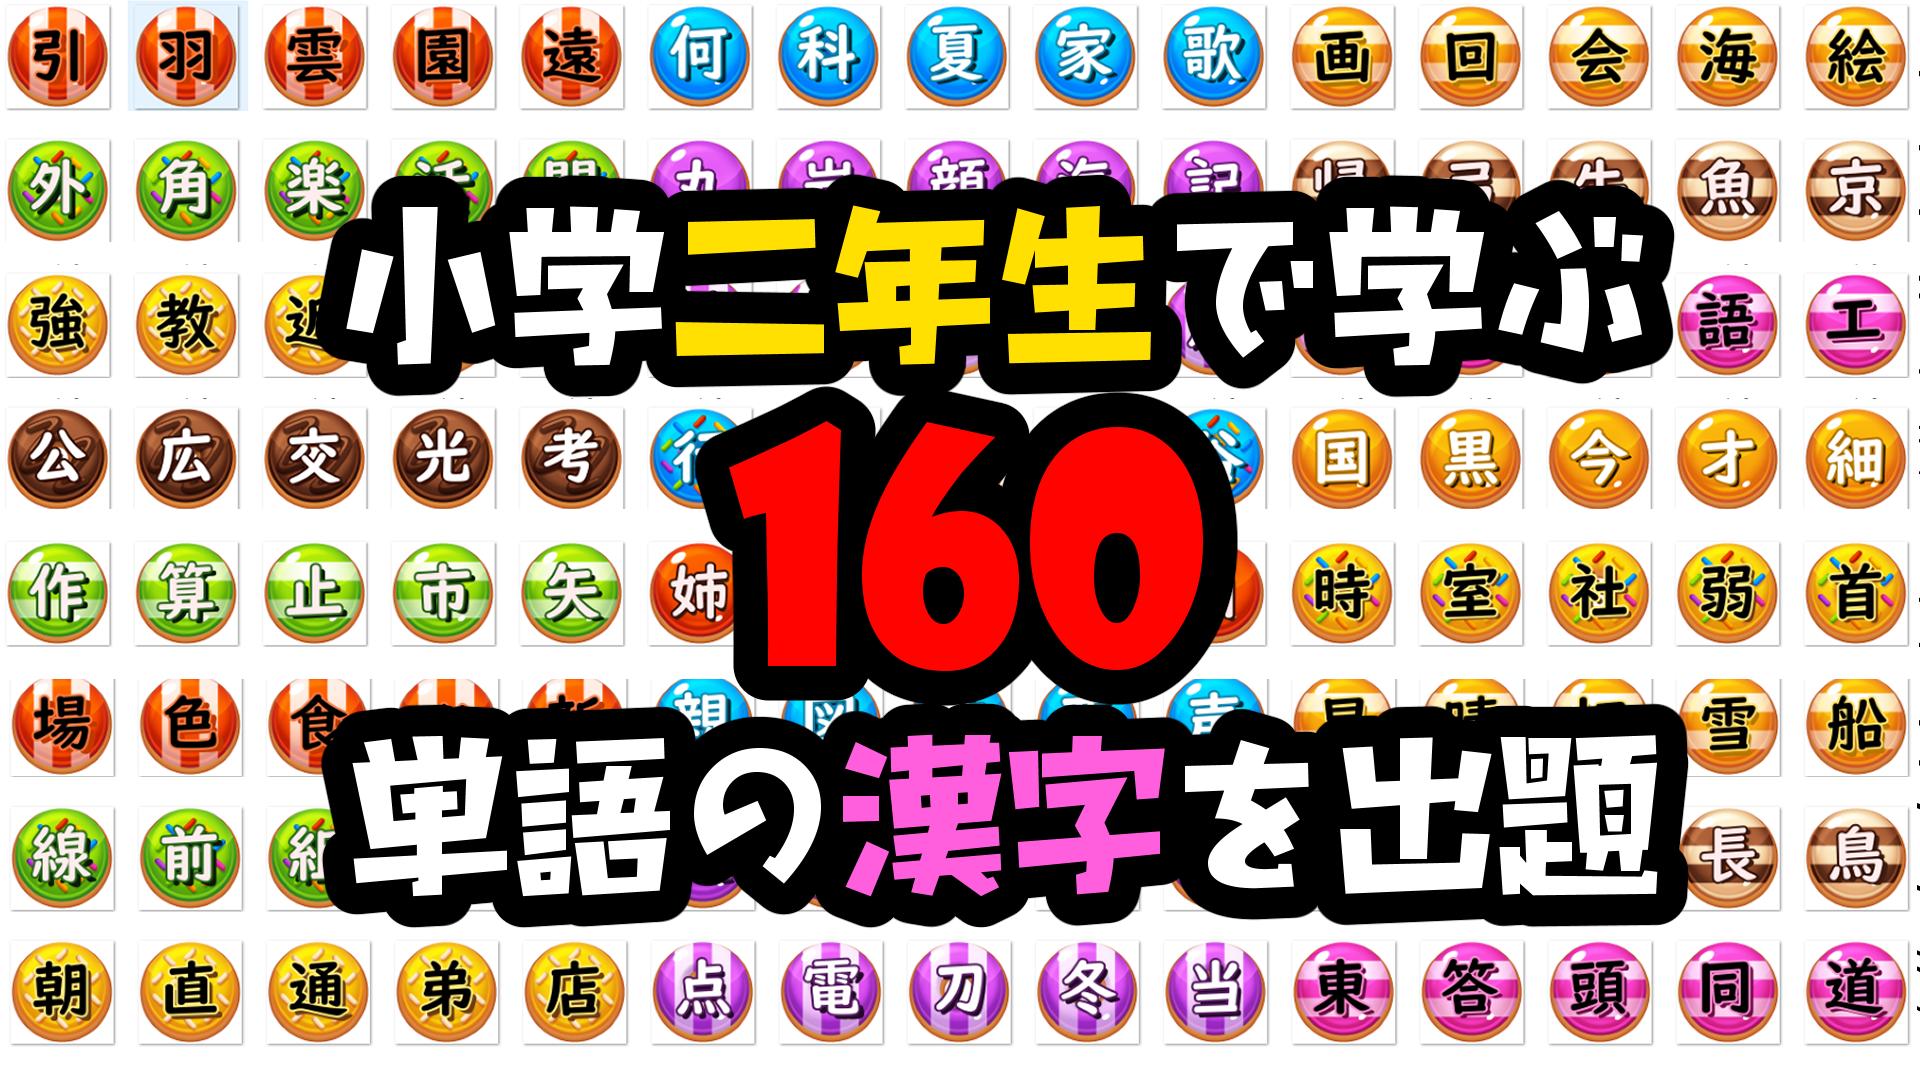 小学二年生 漢字クイズ For Android Apk Download